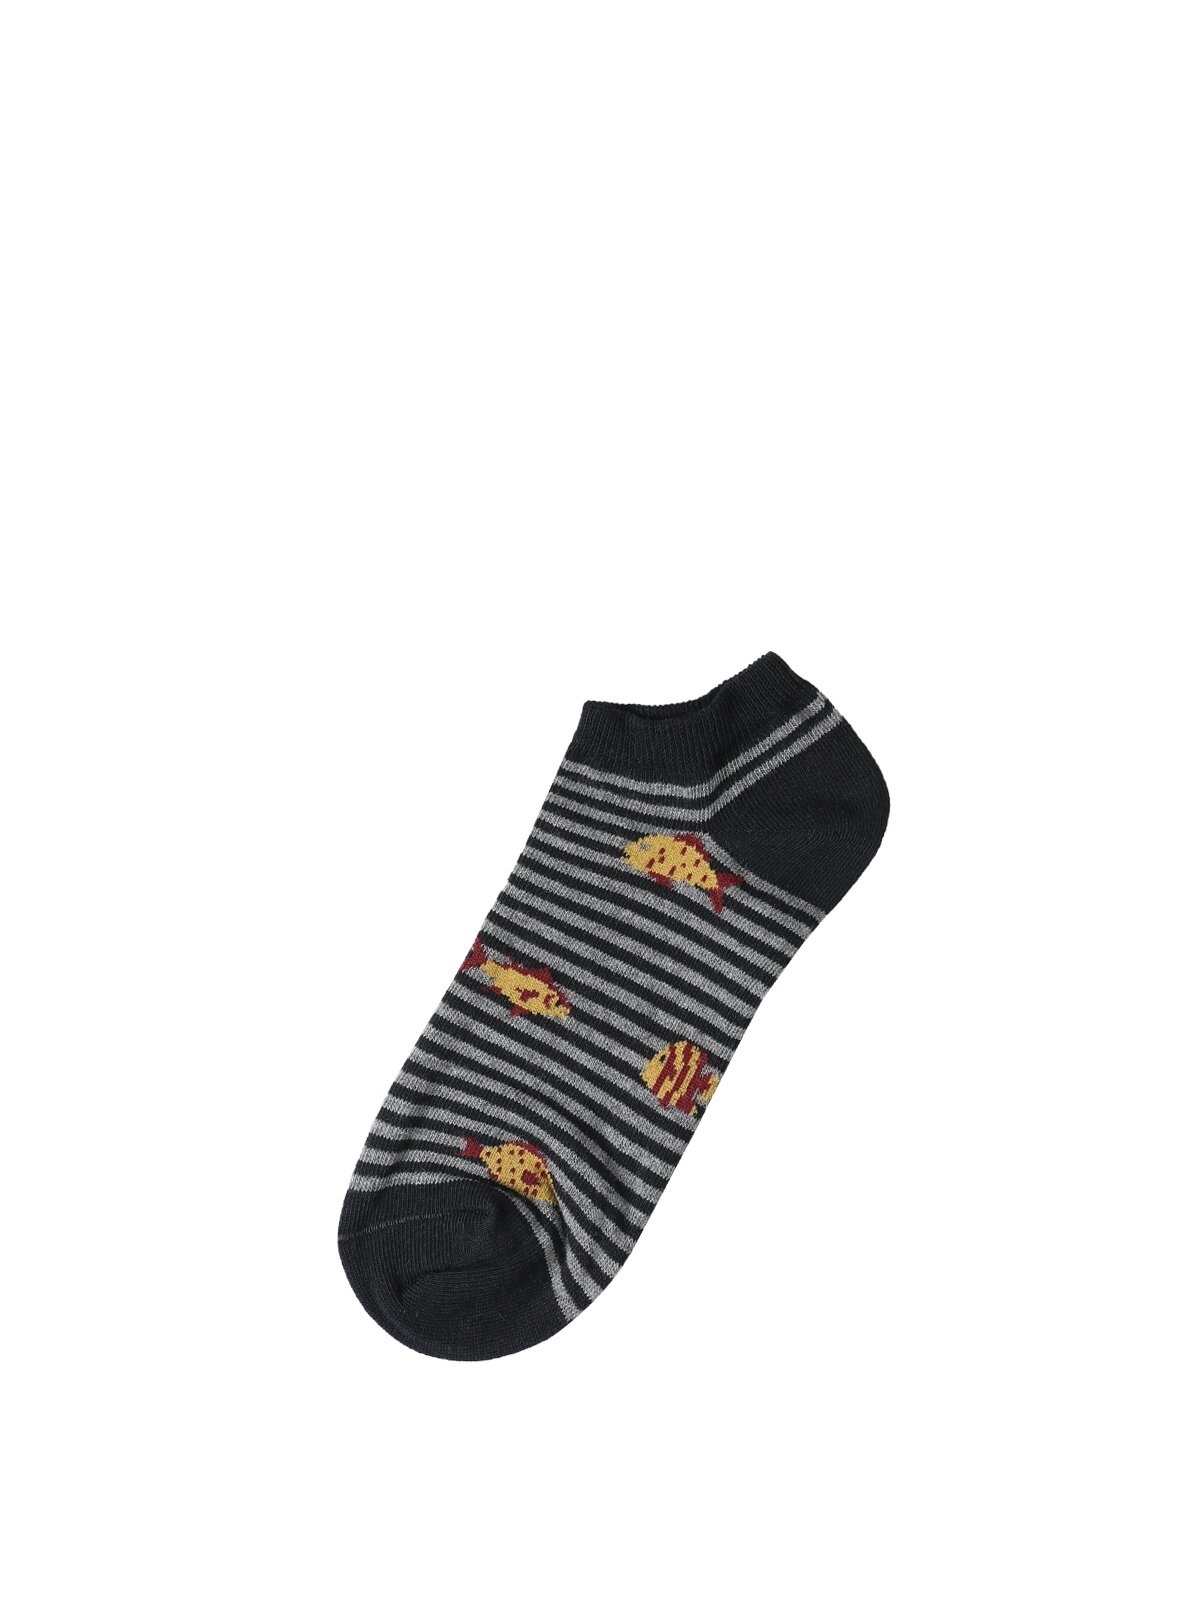 Показати інформацію про Шкарпетки Чоловічі Мультіколор Cl1048153